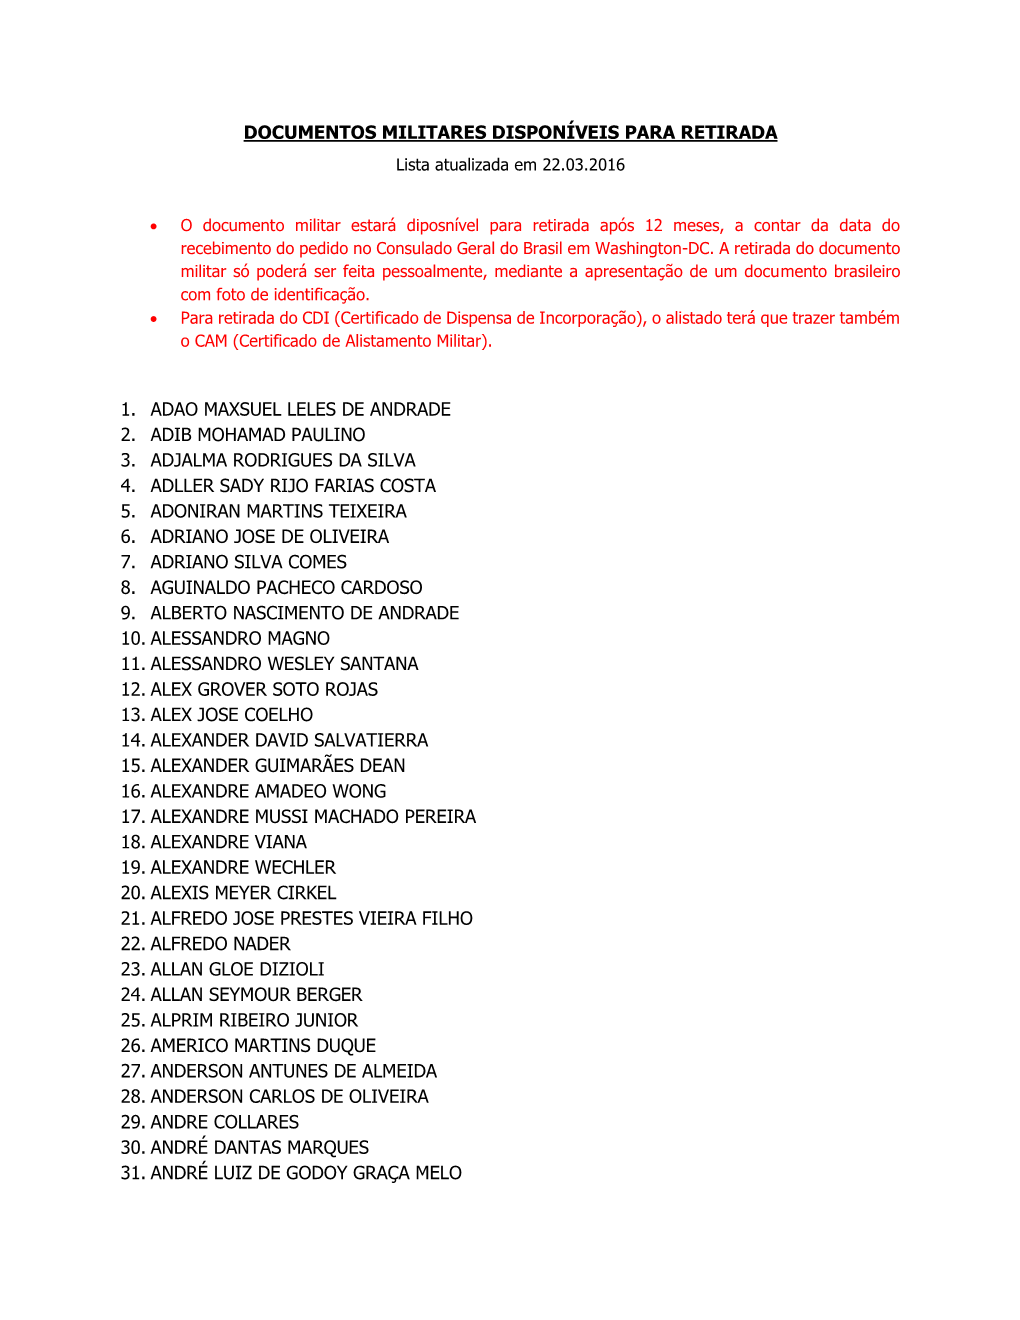 DOCUMENTOS MILITARES DISPONÍVEIS PARA RETIRADA Lista Atualizada Em 22.03.2016